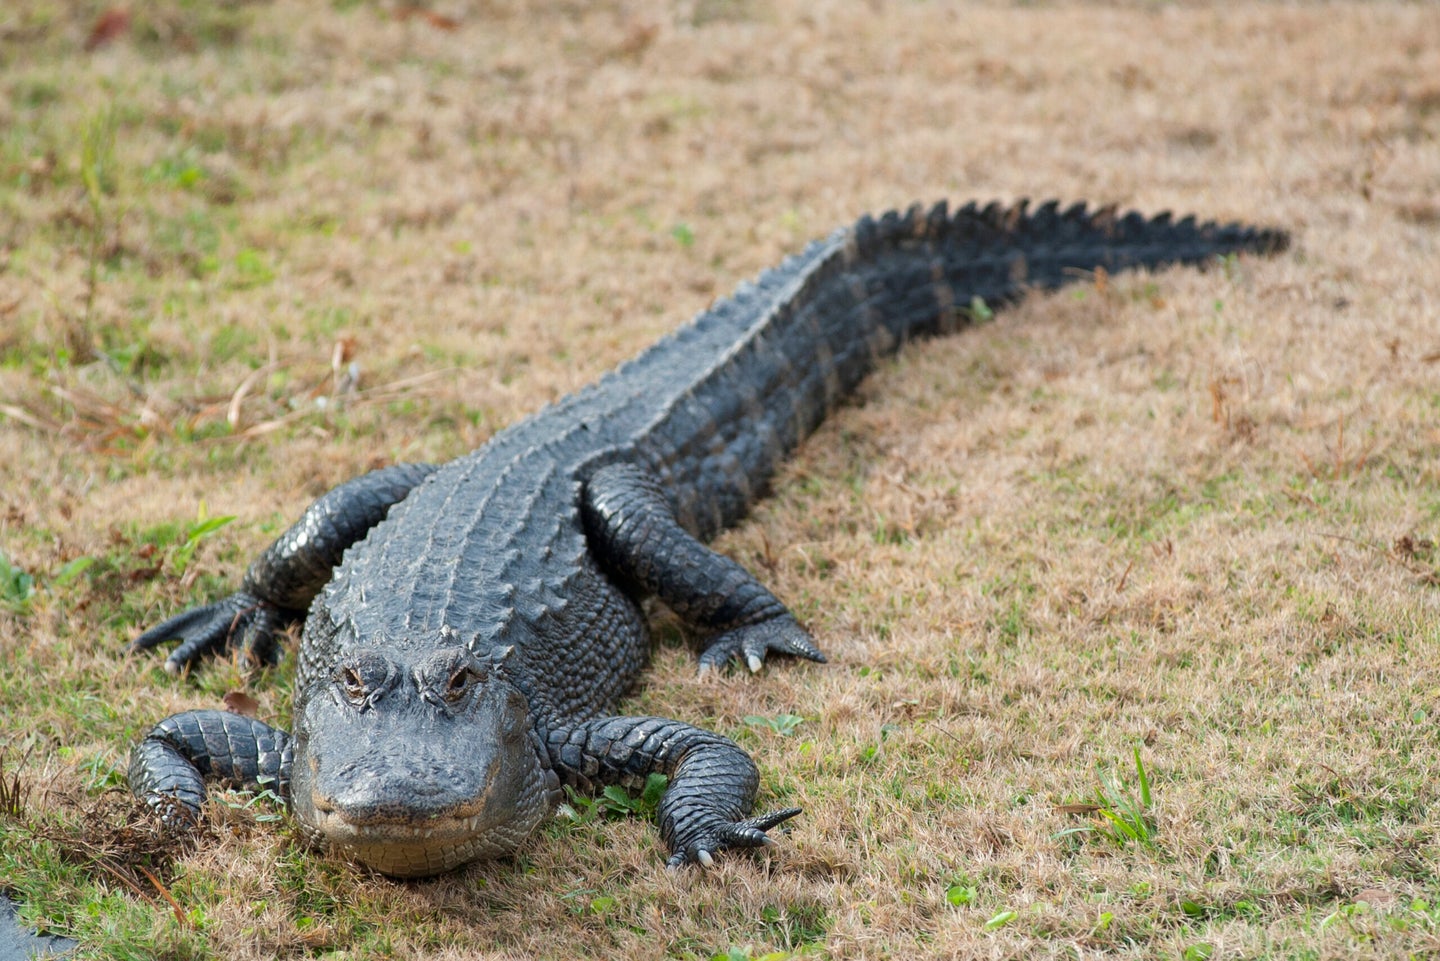 a large alligator